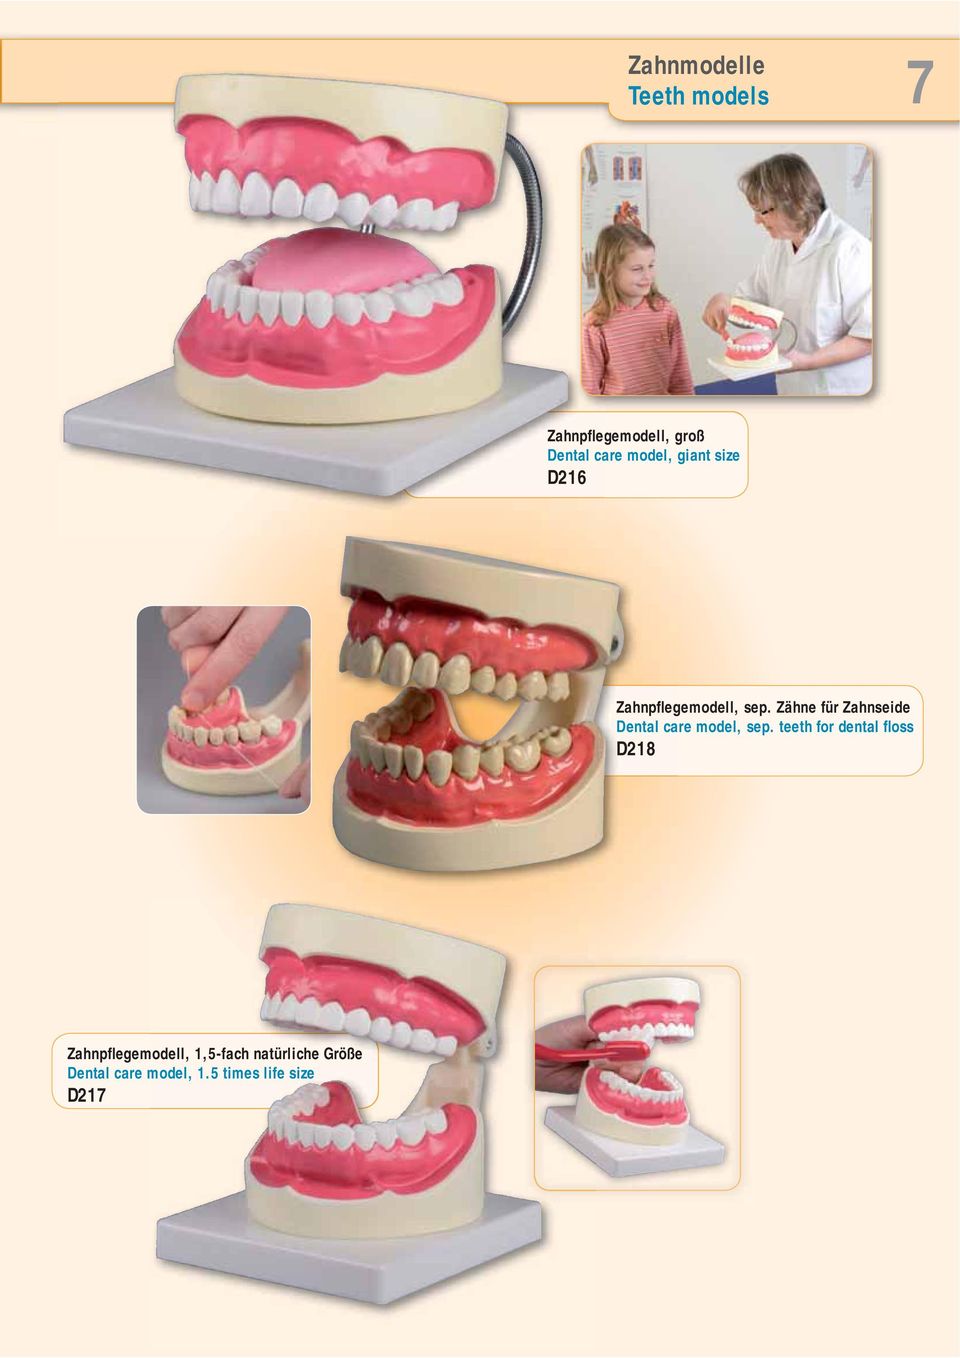 Zähne für Zahnseide Dental care model, sep.